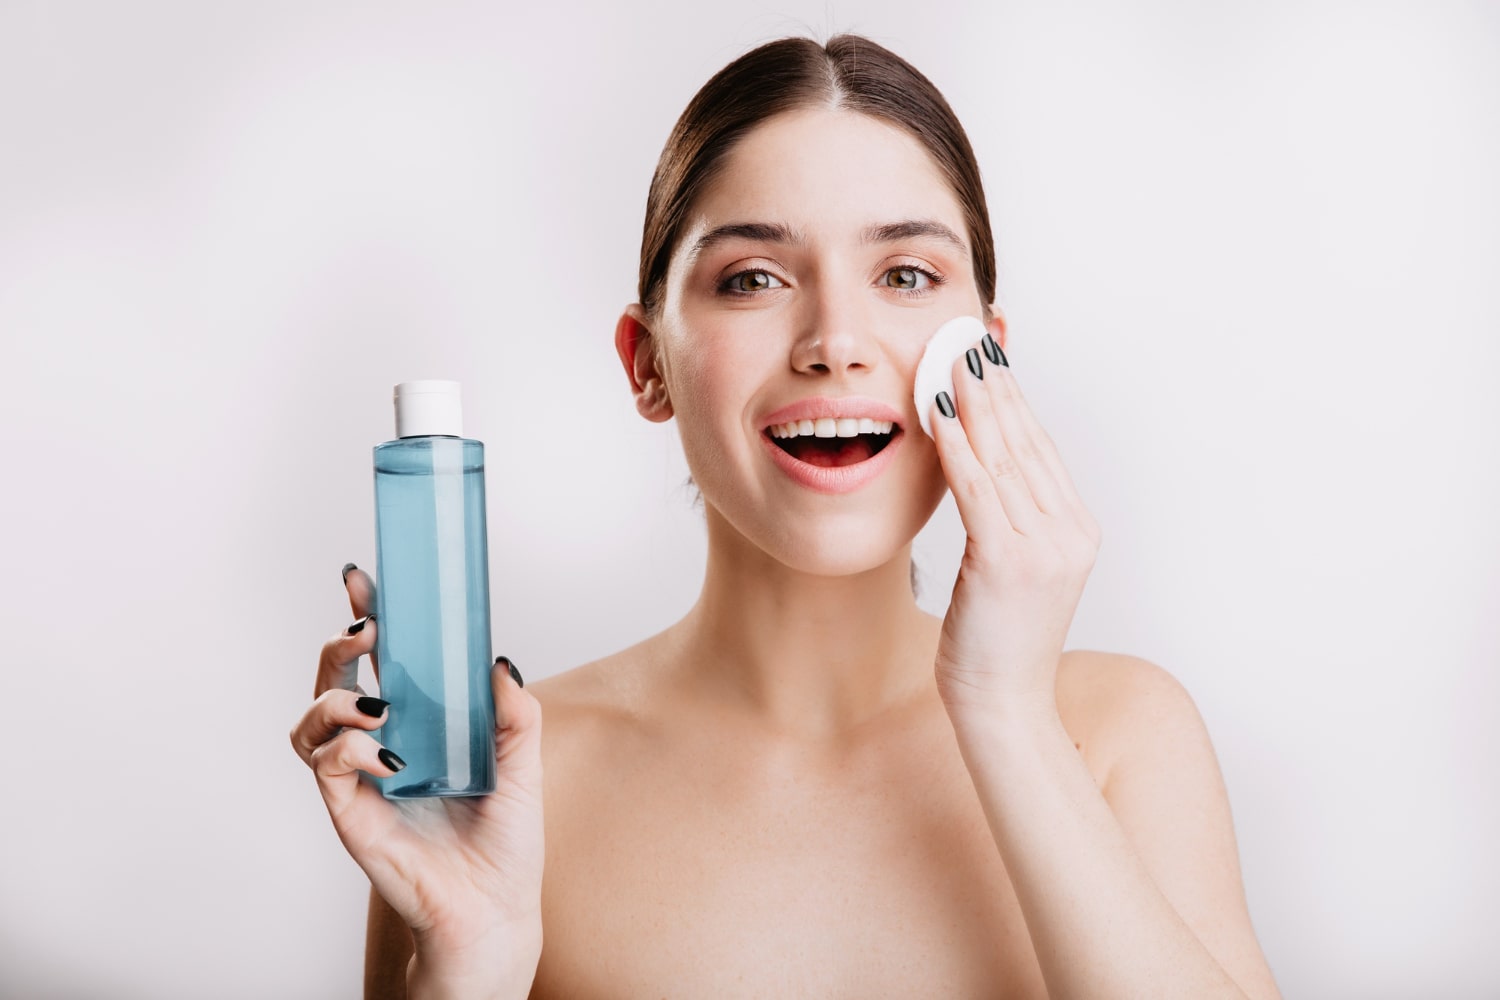 mulher passando produto no rosto para ilustrar texto sobre como preparar a pele para maquiagem